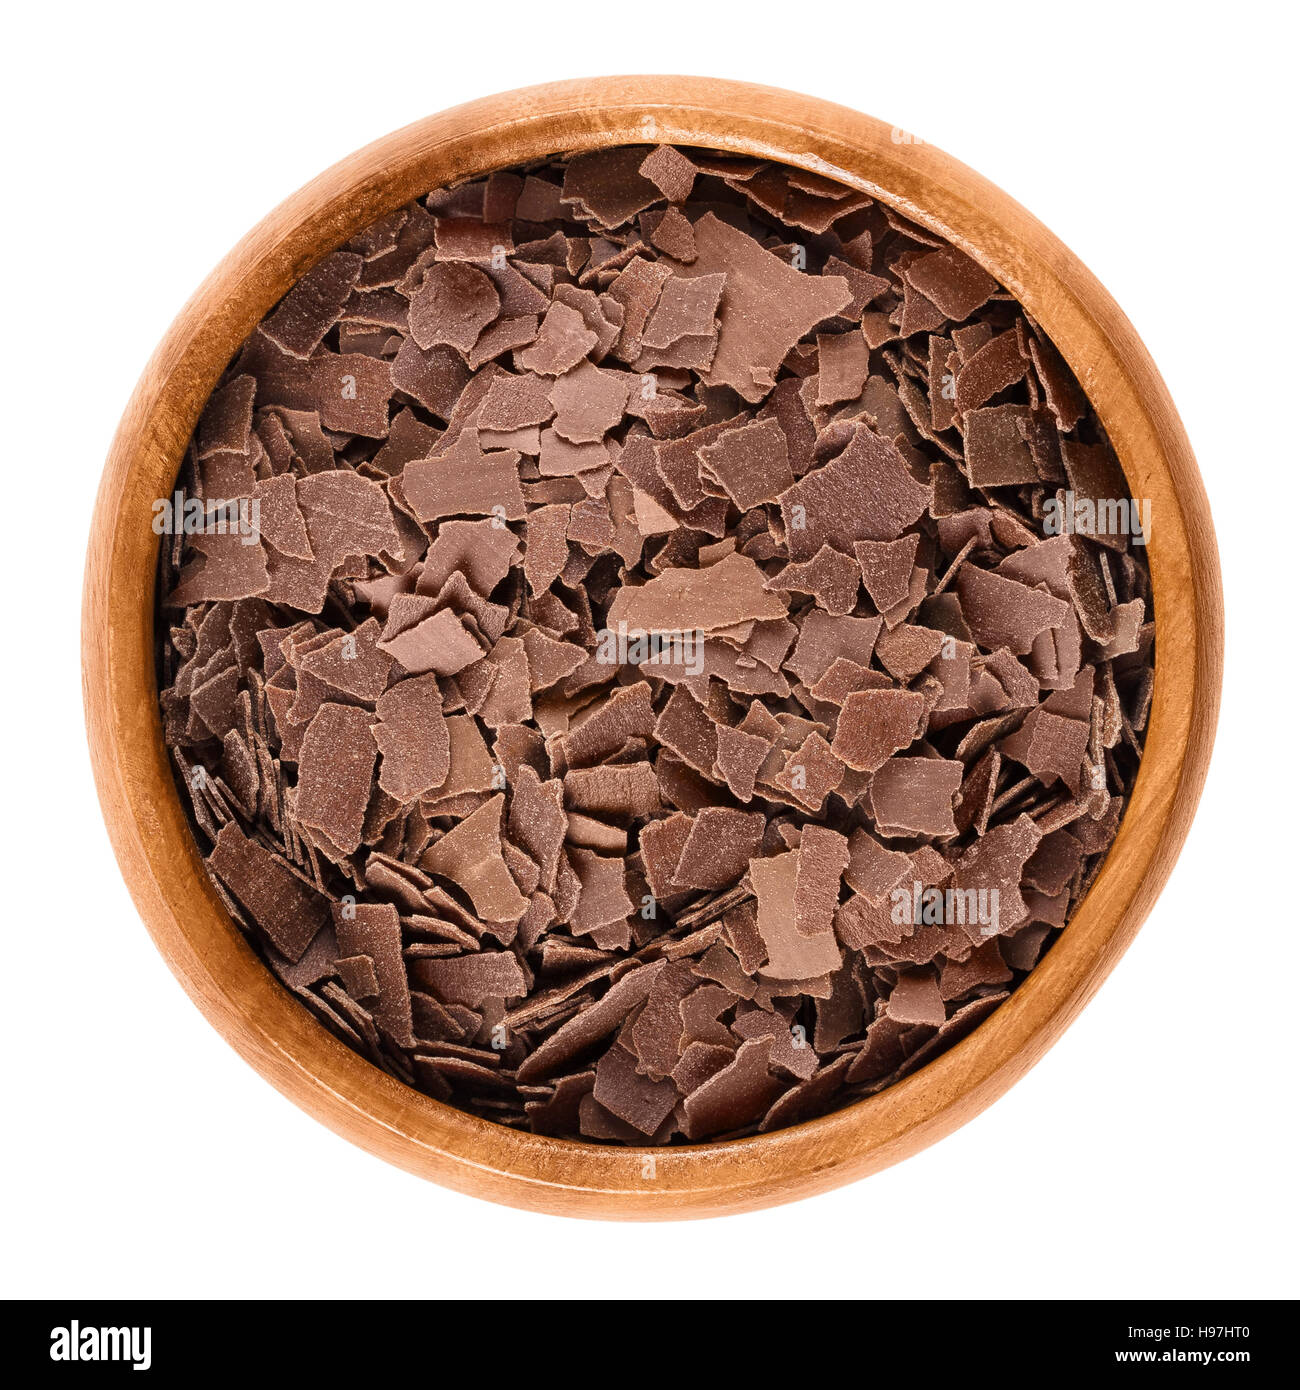 Chocolat au lait râpé dans un bol en bois. Brown copeaux de chocolat pour décorer les gâteaux, pâtisseries et biscuits. Macro photo alimentaire isolé Banque D'Images